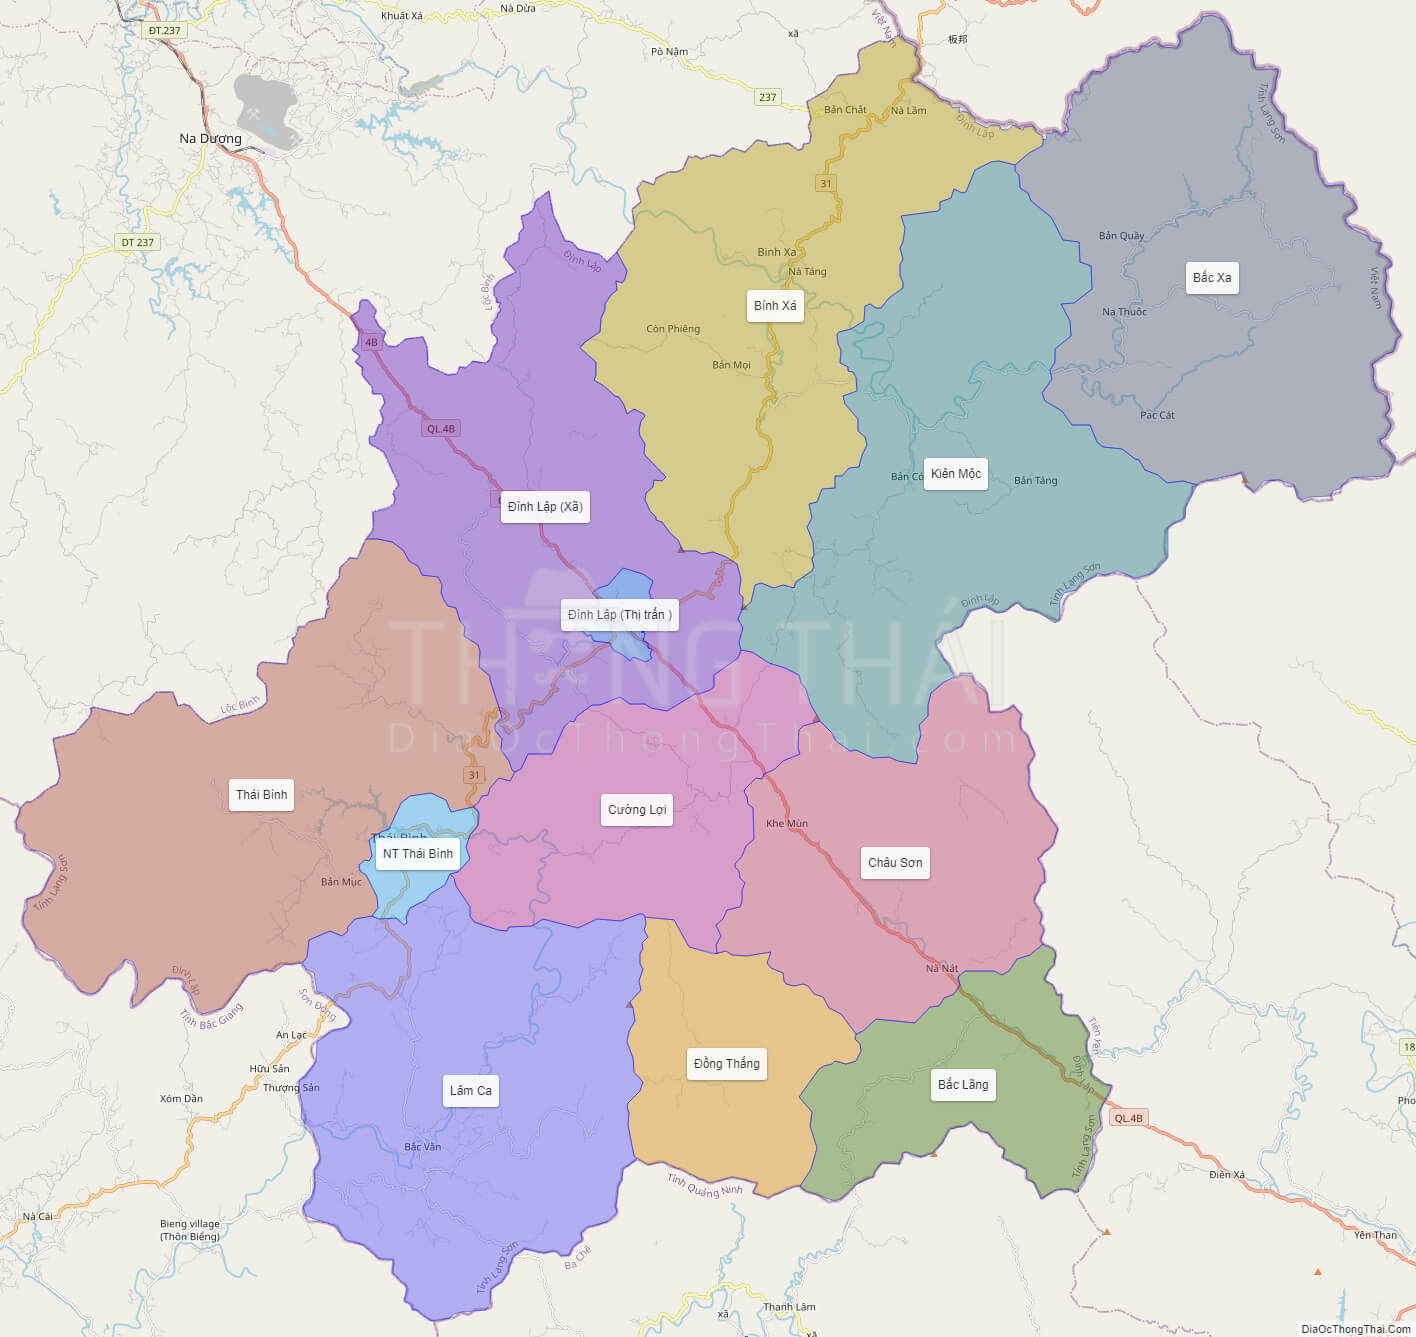 Bản đồ huyện Hữu Lũng tỉnh Lạng Sơn năm 2024 sẽ cung cấp những thông tin cập nhật về tuyến đường huyết mạchal, các khu công nghiệp mới mọc lên cũng như các điểm du lịch hấp dẫn nằm trong vùng. Hãy cùng khám phá và sẵn sàng cho một chuyến đi đầy tuyệt vời.